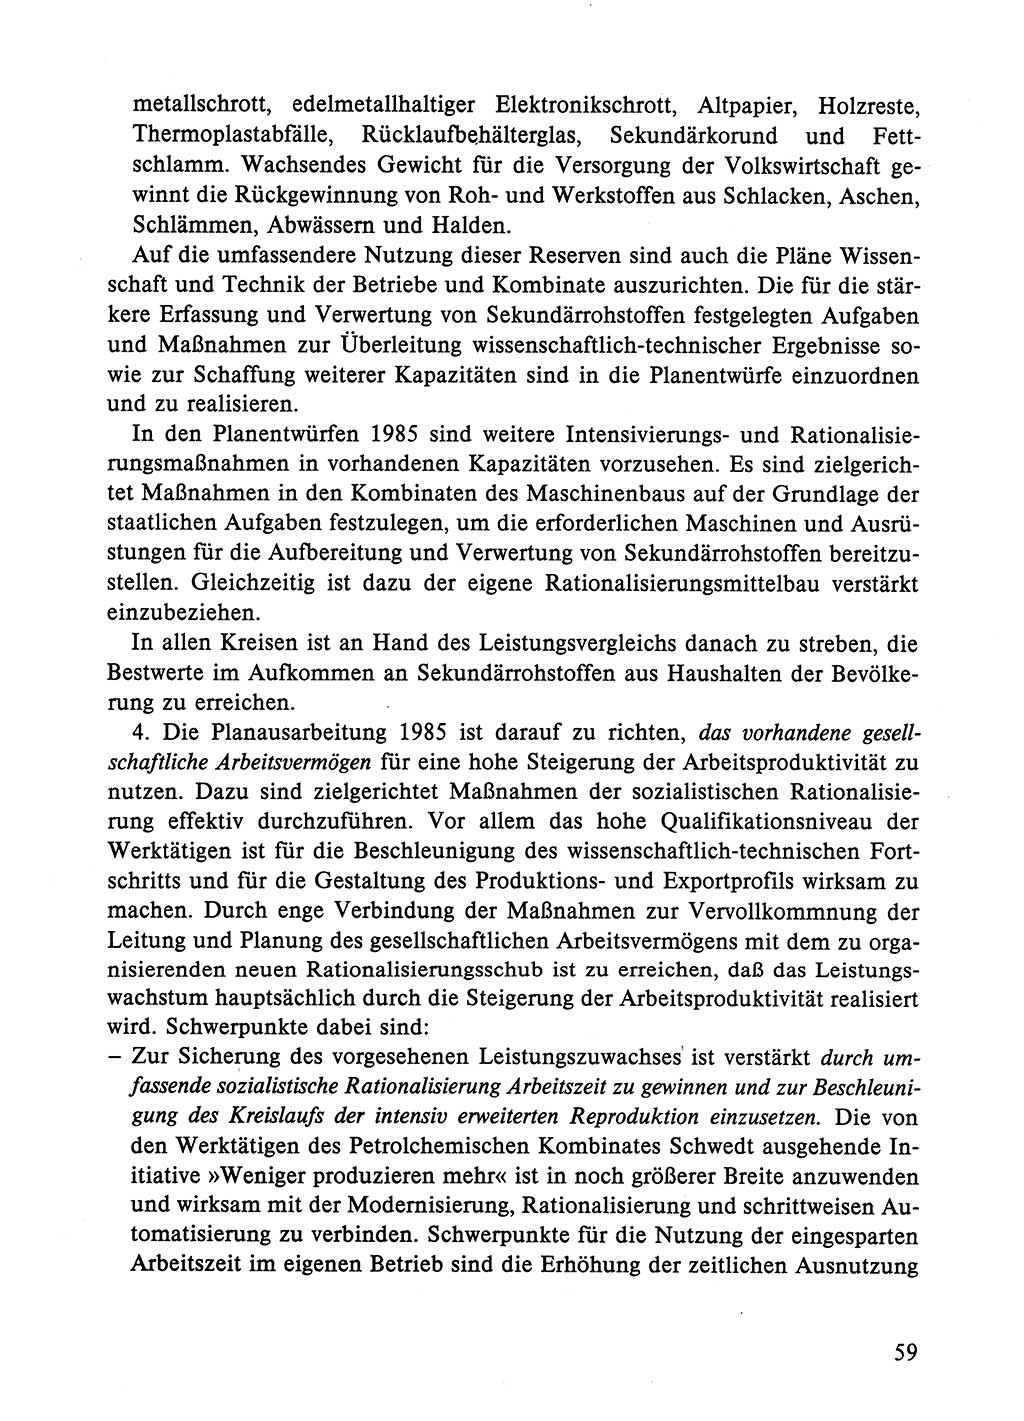 Dokumente der Sozialistischen Einheitspartei Deutschlands (SED) [Deutsche Demokratische Republik (DDR)] 1984-1985, Seite 59 (Dok. SED DDR 1984-1985, S. 59)